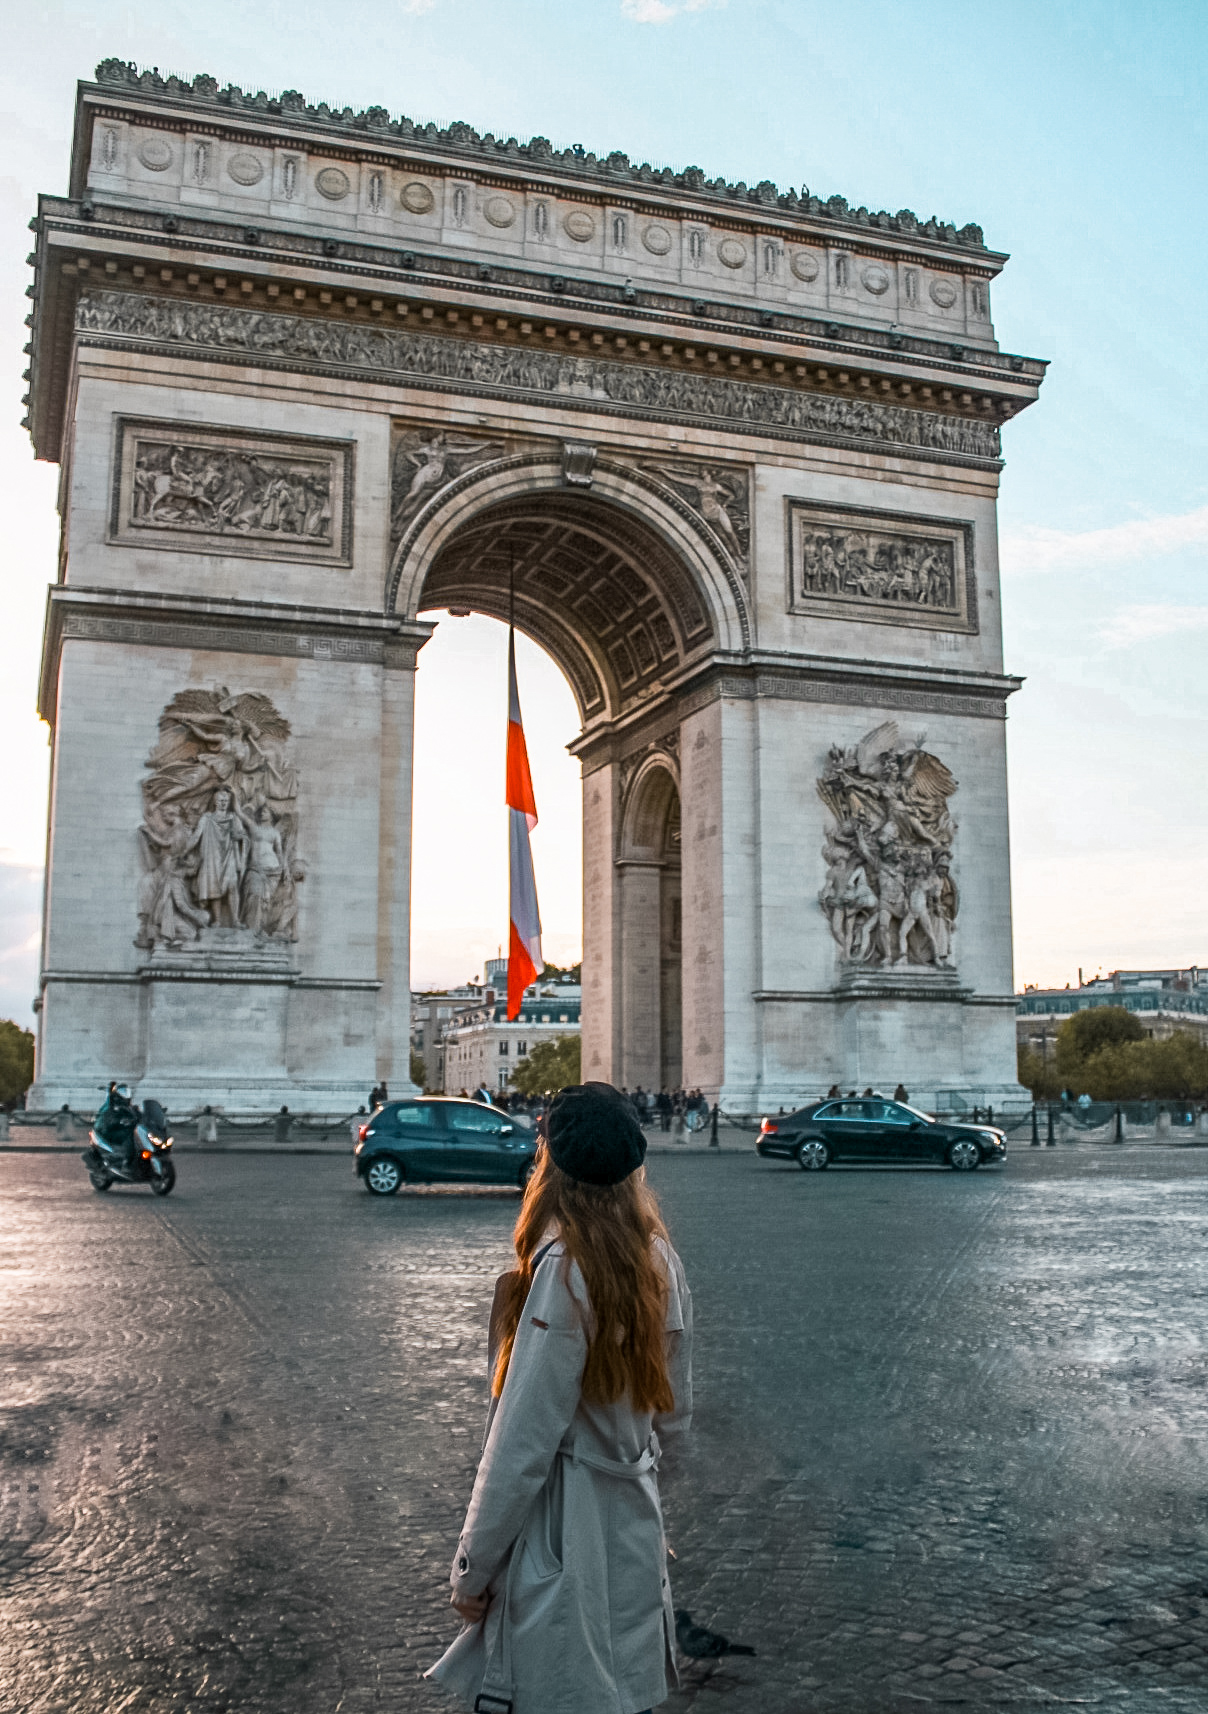 Arc de triomphe
Top 10 Photo Spots in Paris